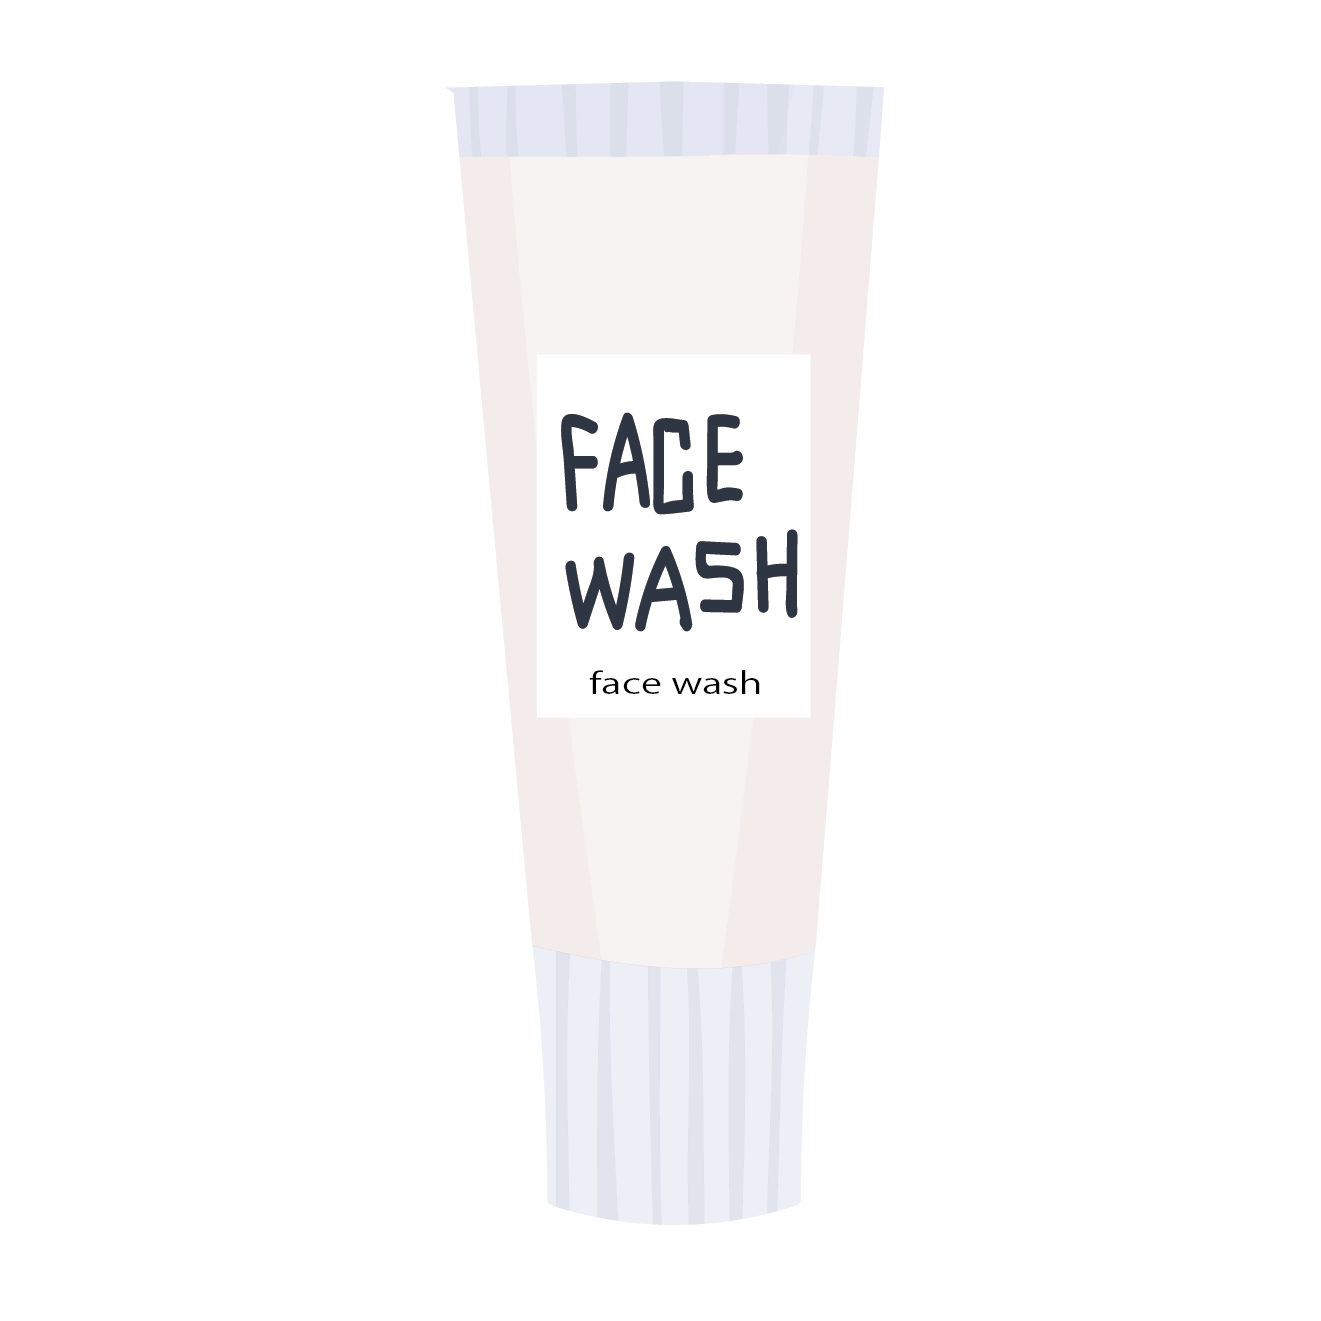 おしゃれな洗顔フォーム フェイスウォッシュ のイラスト 商用フリー 無料 のイラスト素材なら イラストマンション